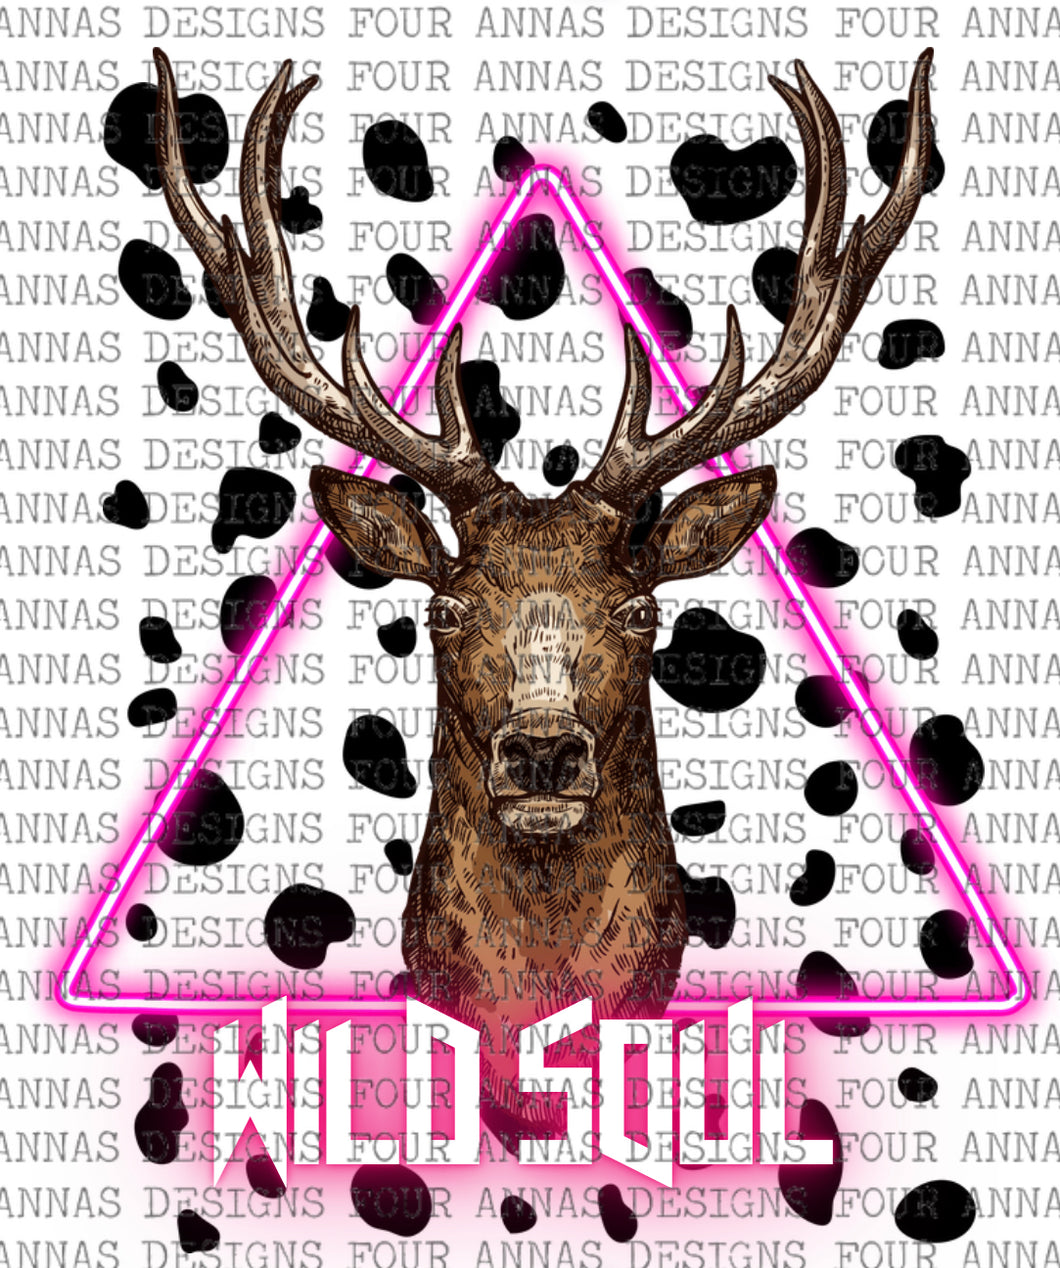 Wild soul deer